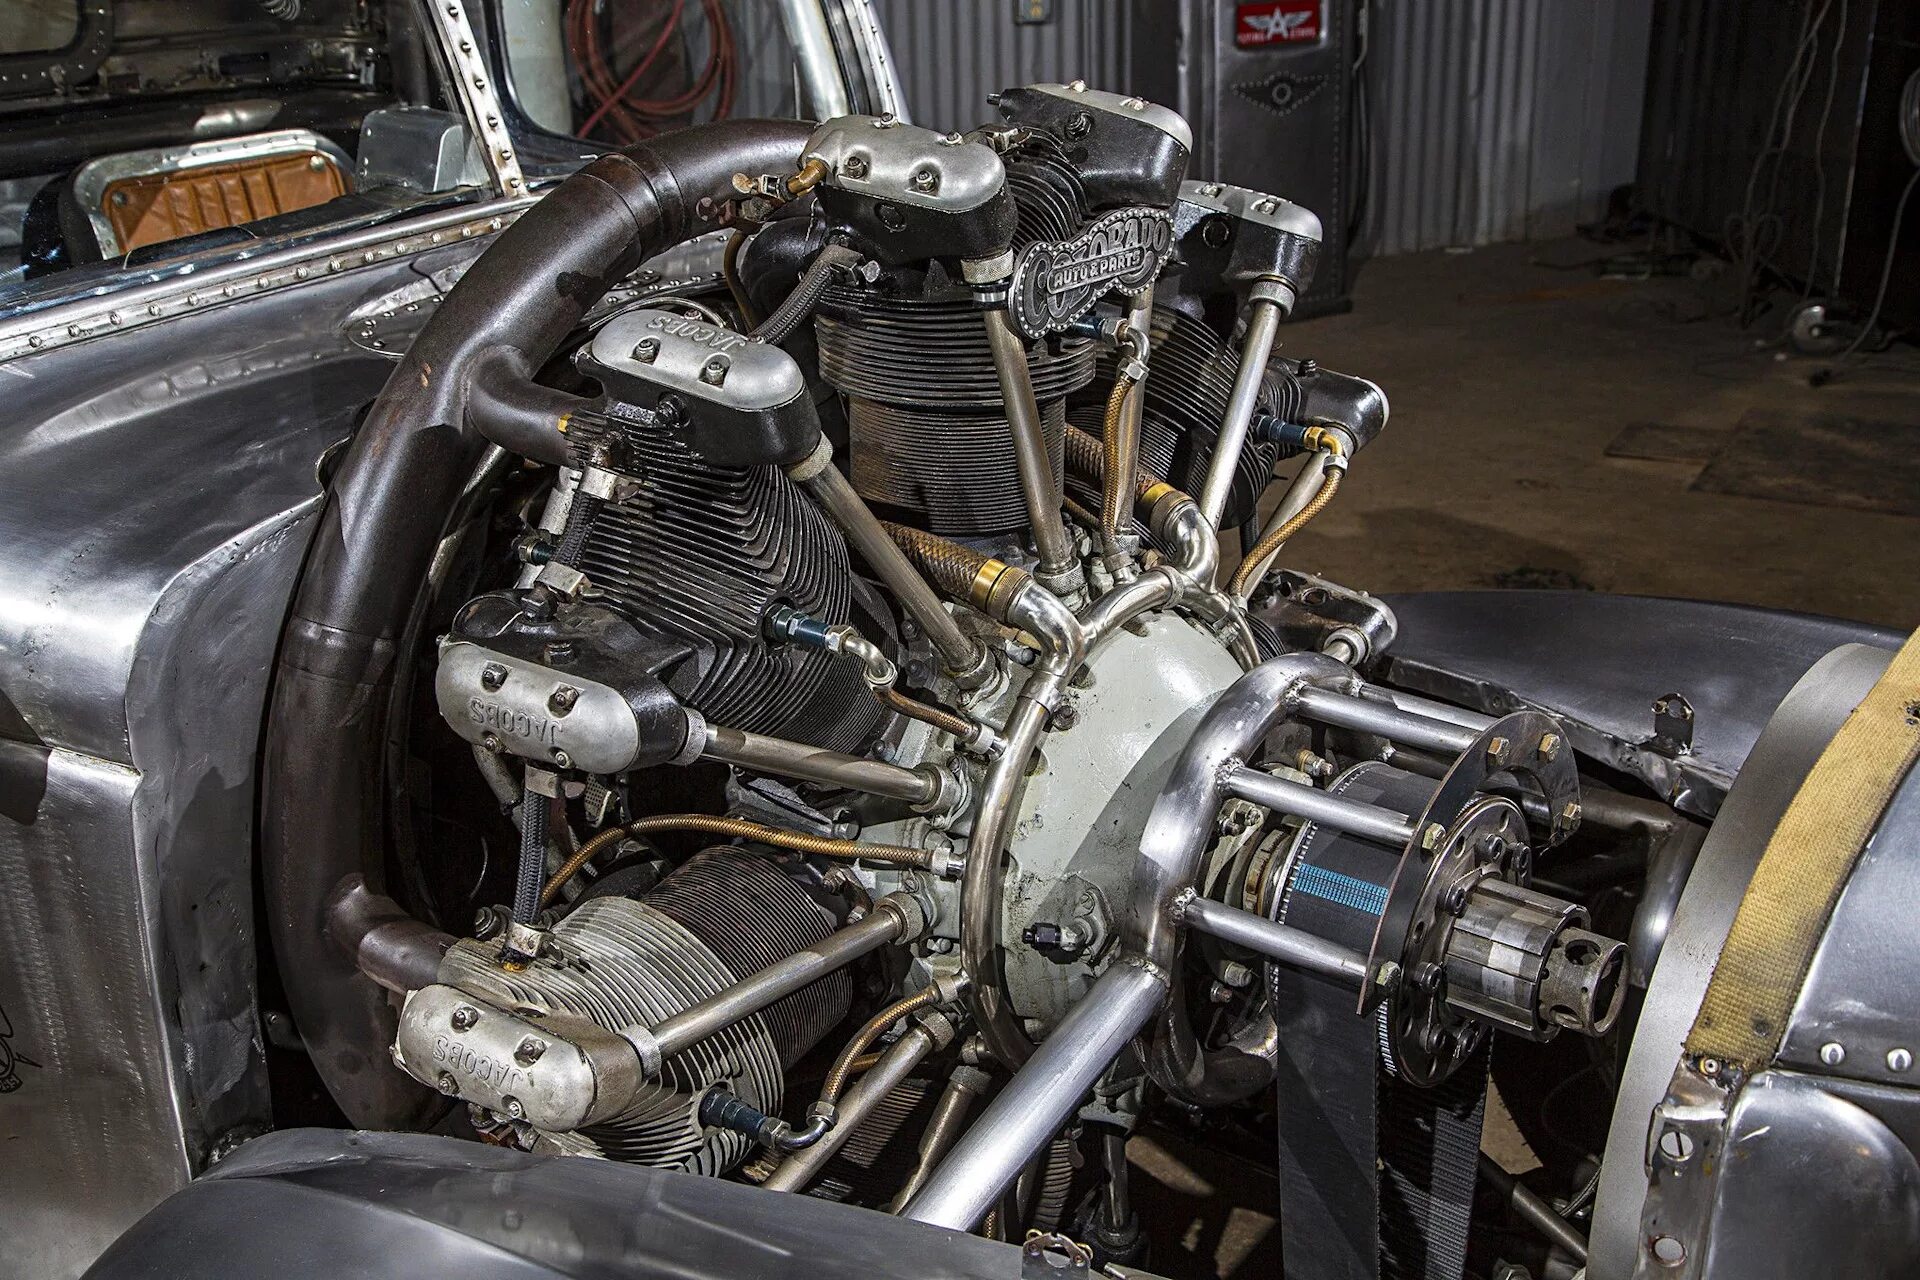 Немецкие двигатели автомобилей. РД-515 двигатель. Radial aircraft engine 125сс. Машина с самолетным двигателем. Автомобиль с двигателем от самолета.